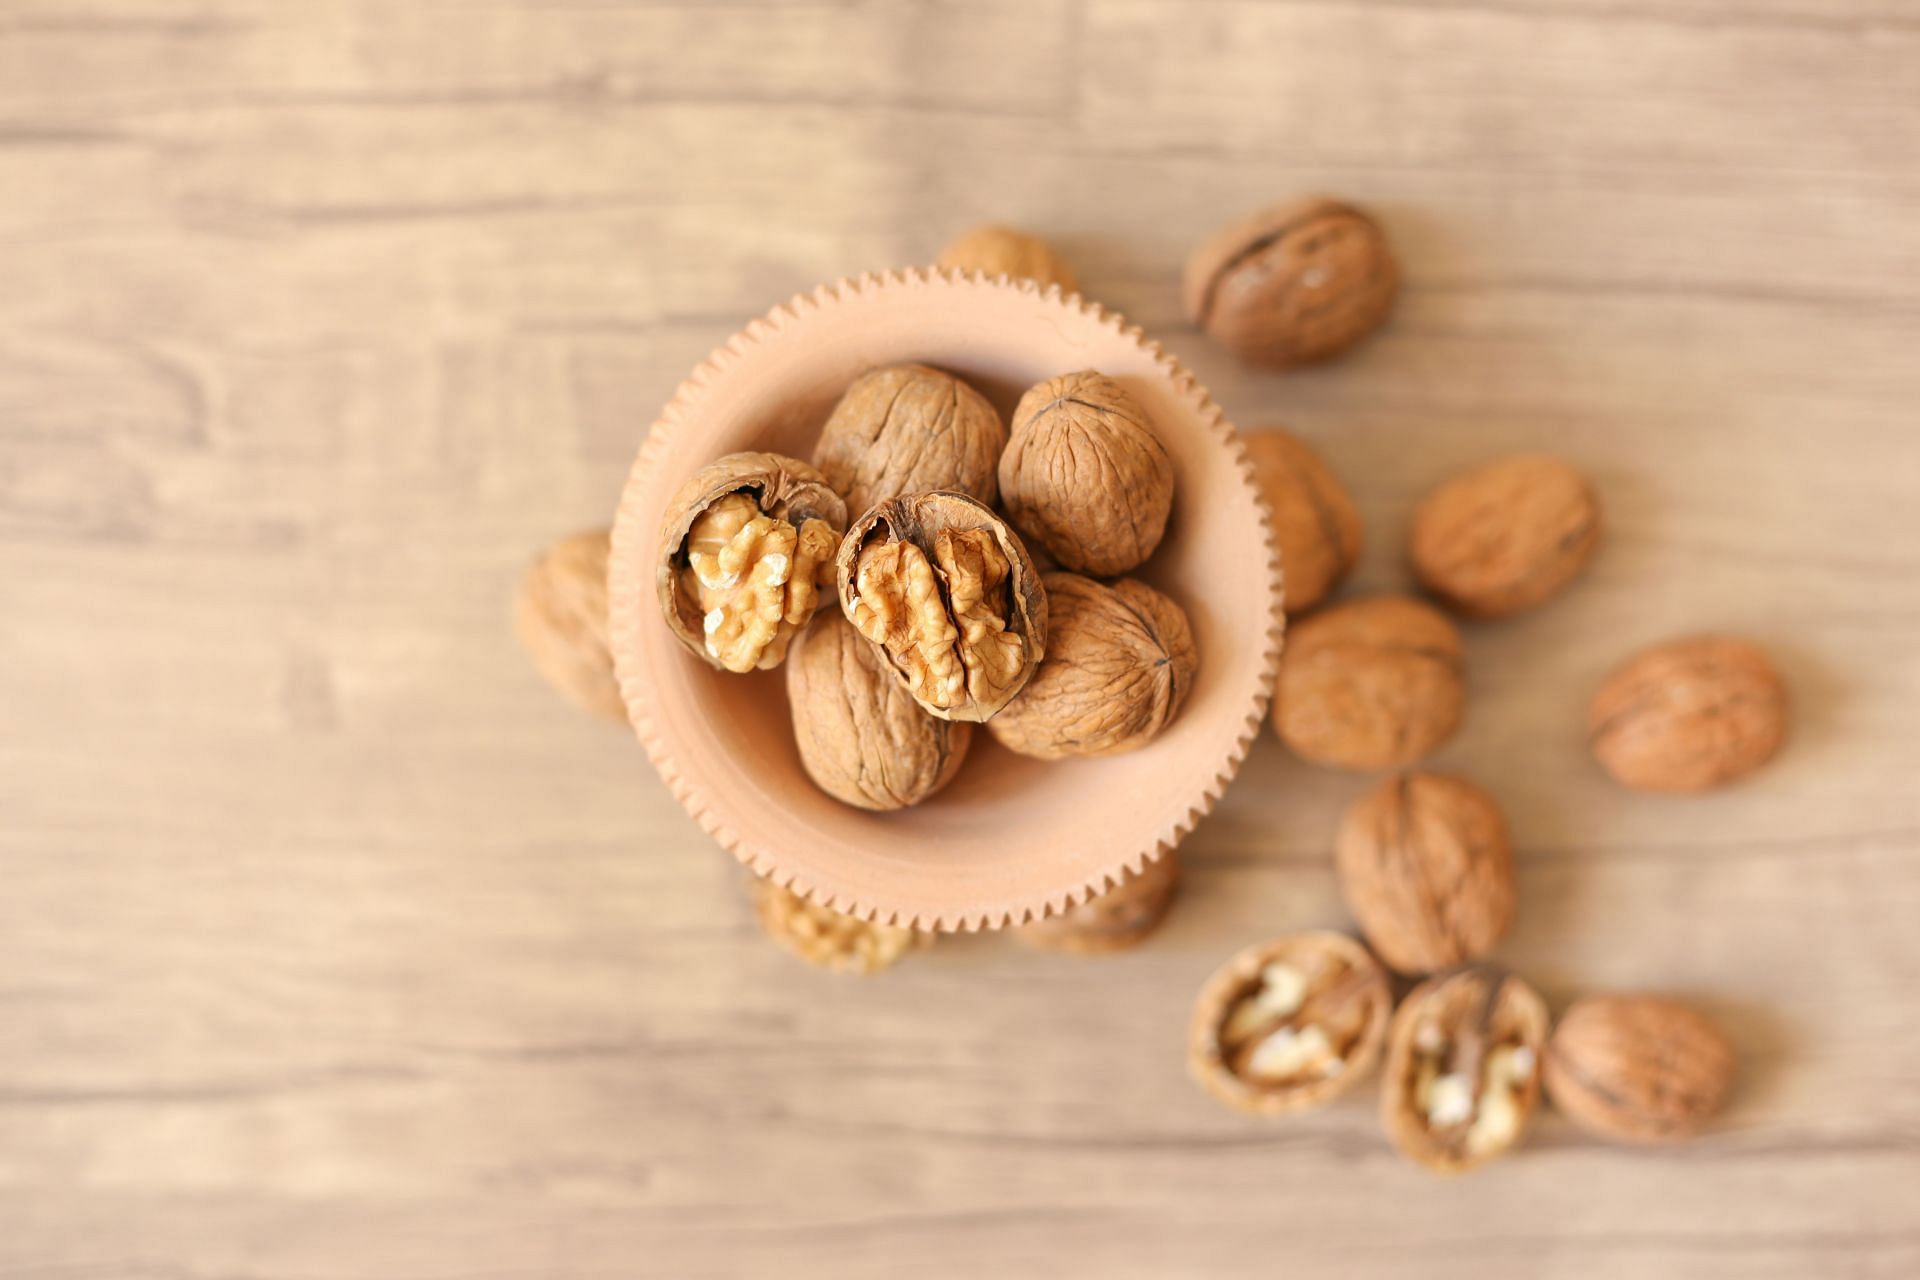 Walnuts are superfood (Image via Unsplash/Sahand Babali)